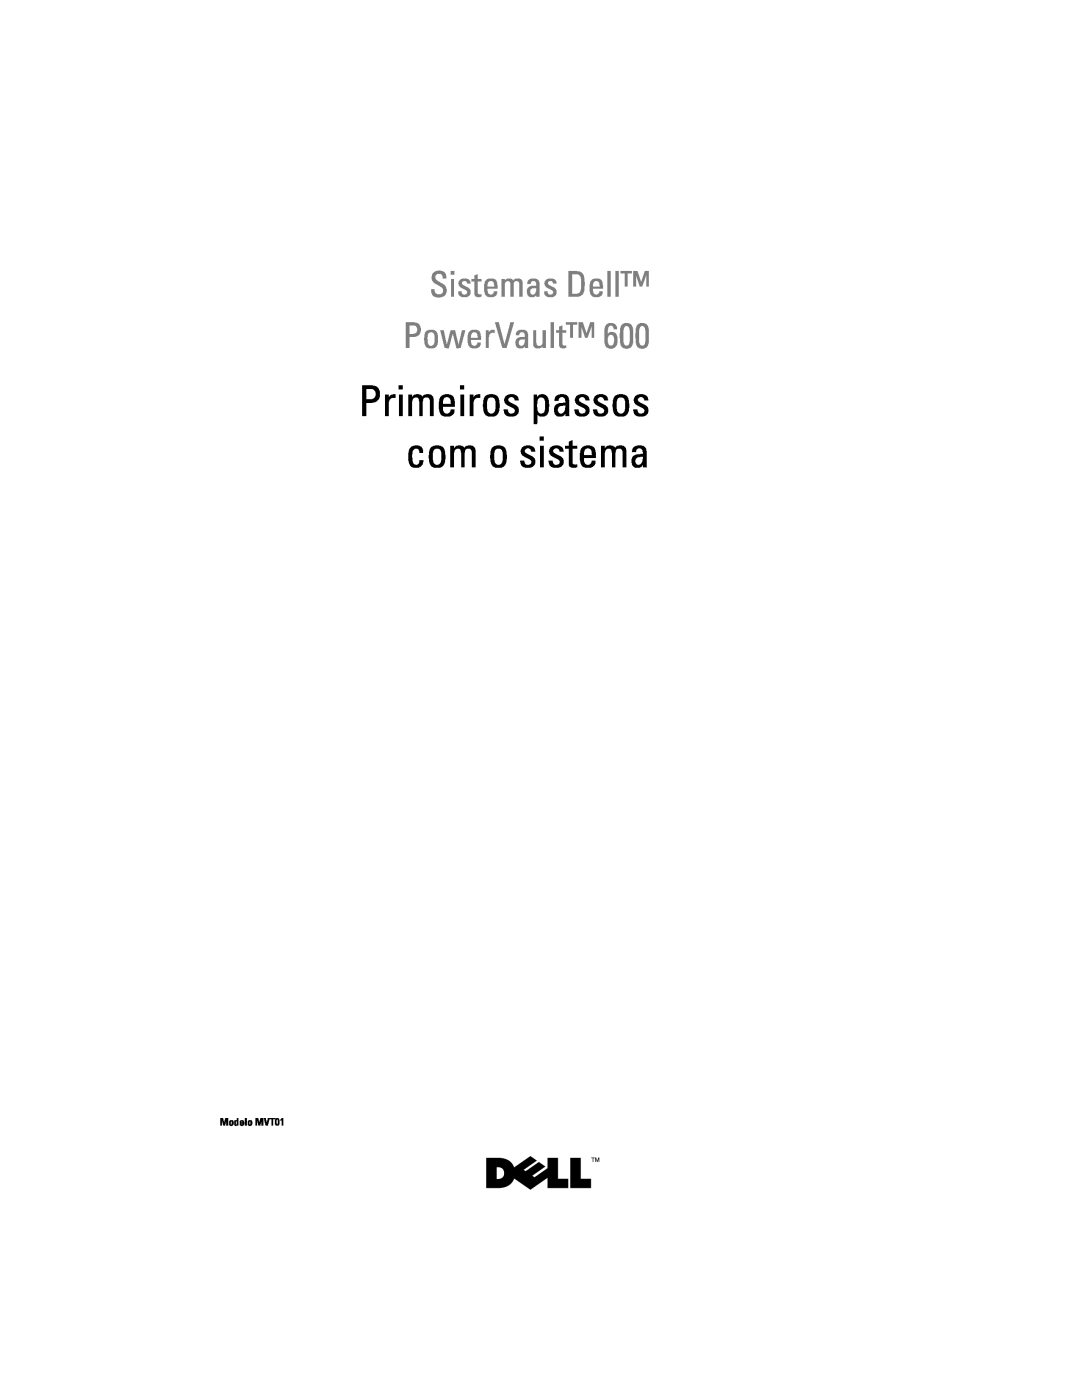 Dell CX193 manual Primeiros passos com o sistema, Sistemas Dell PowerVault, Modelo MVT01 